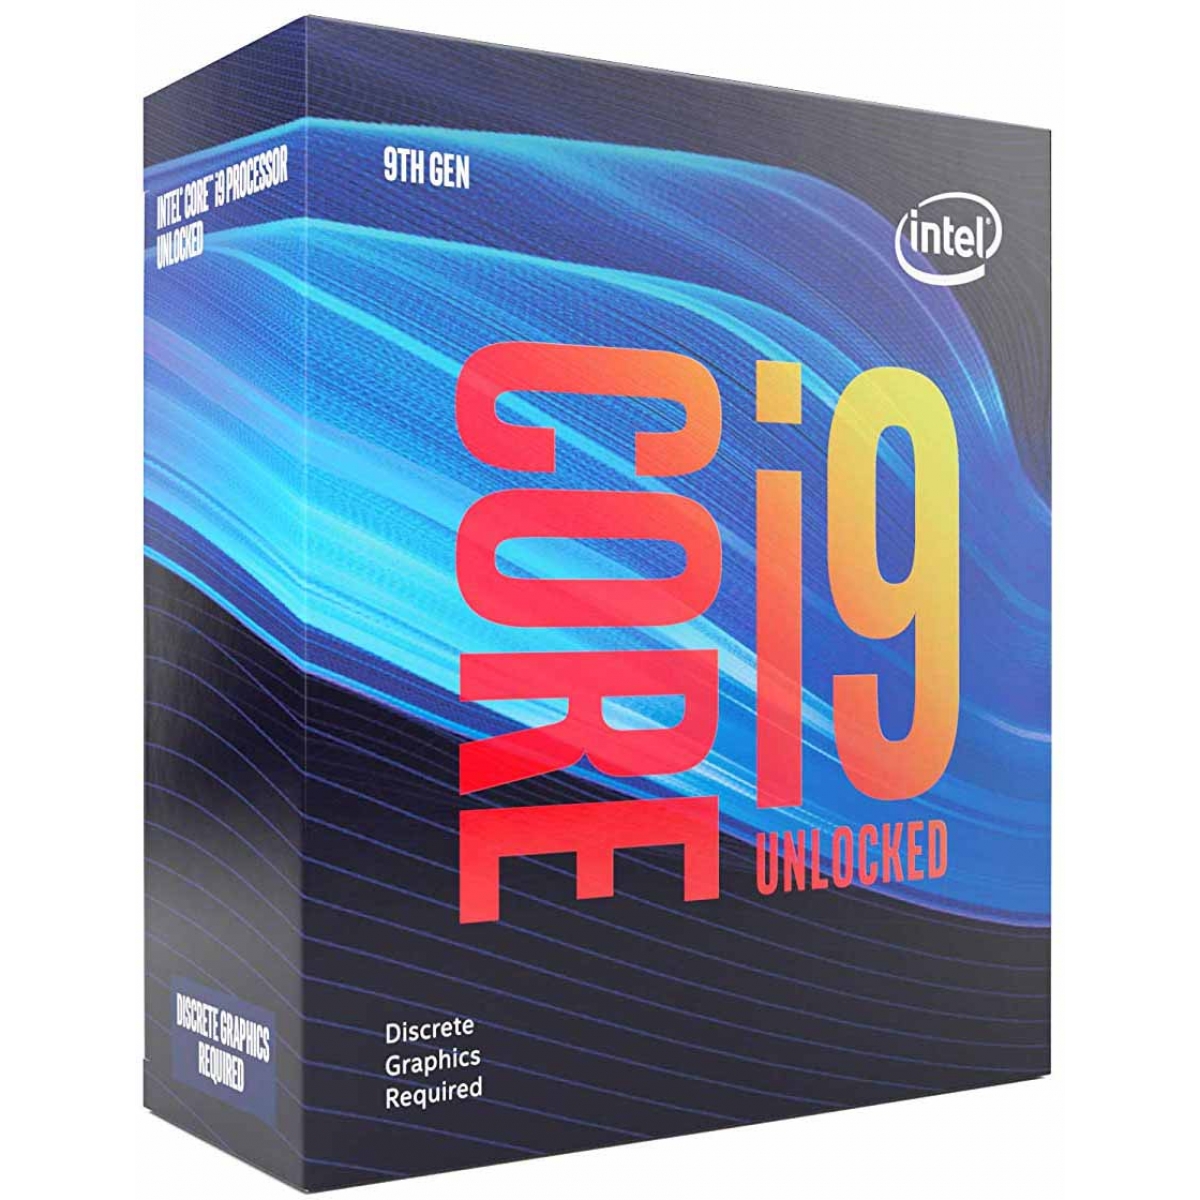 Processador Intel Core i9 9900KF 3.60GHz (5.0GHz Turbo), 9ª Geração, 8-Core 16-Thread, LGA 1151, BX80684I99900KF